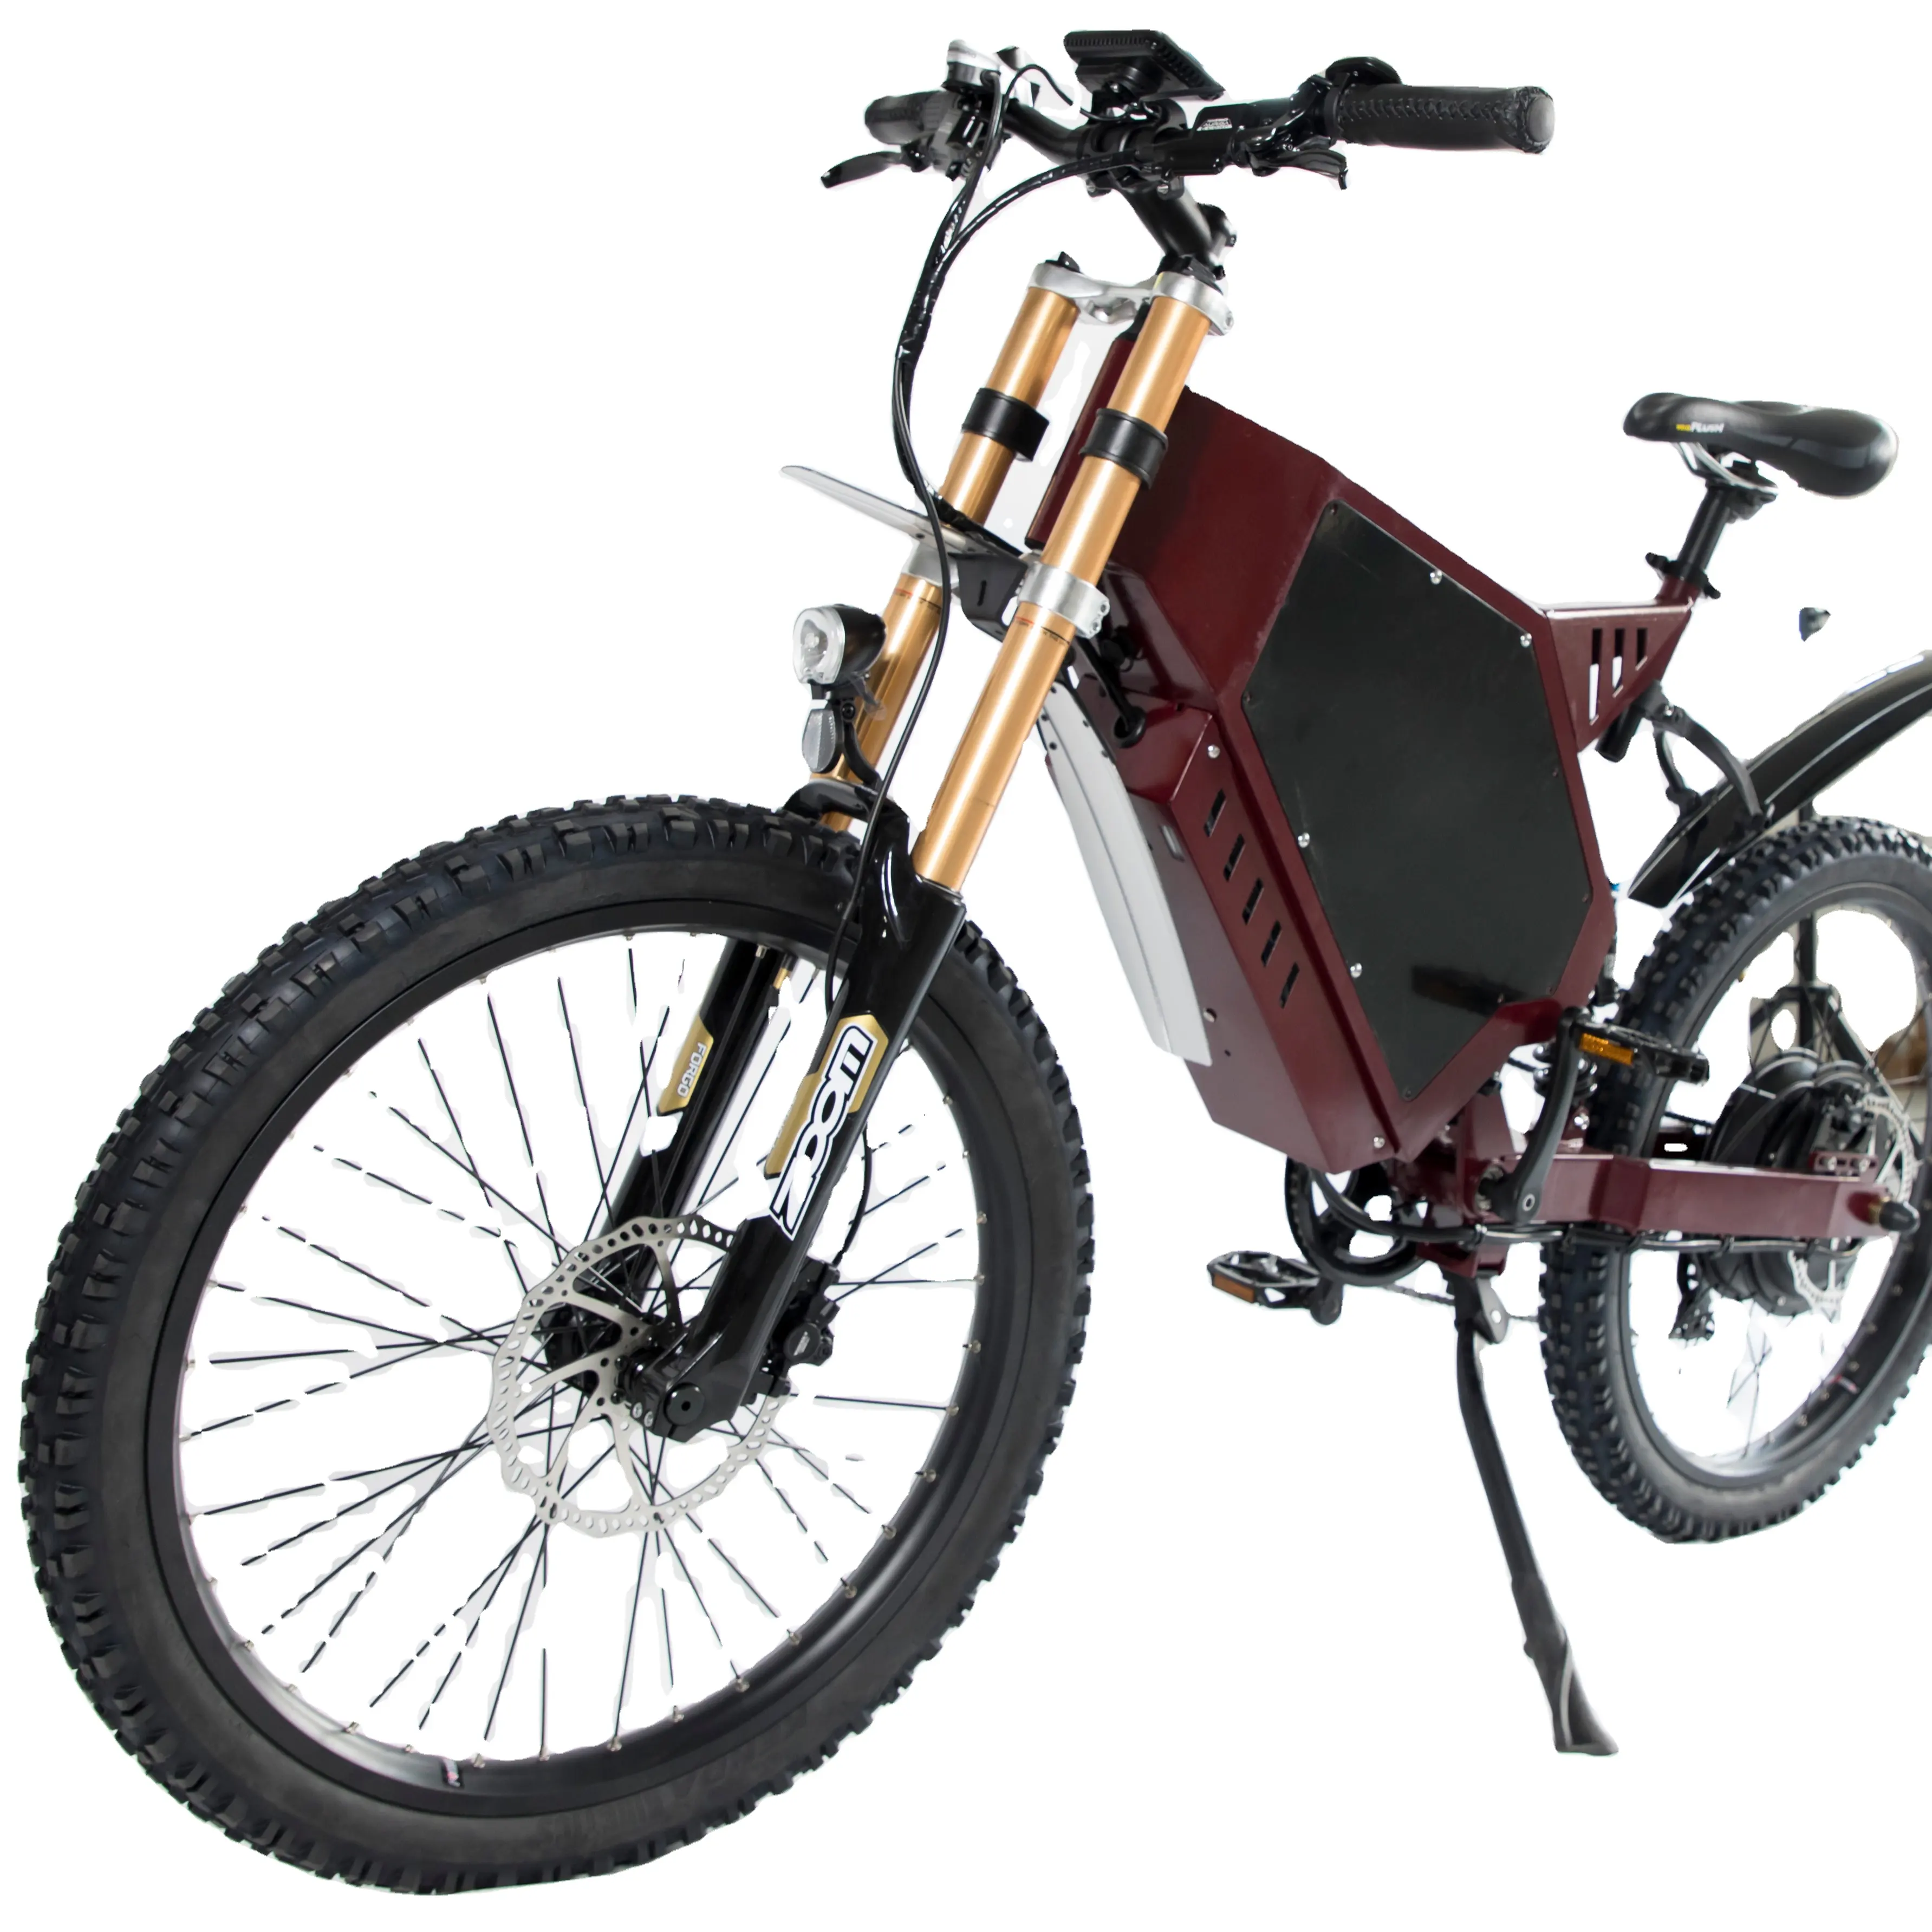 Melhor bicicleta elétrica 3000w 5000w 8000w sujeira moto e bicicleta elétrica para venda no walmart